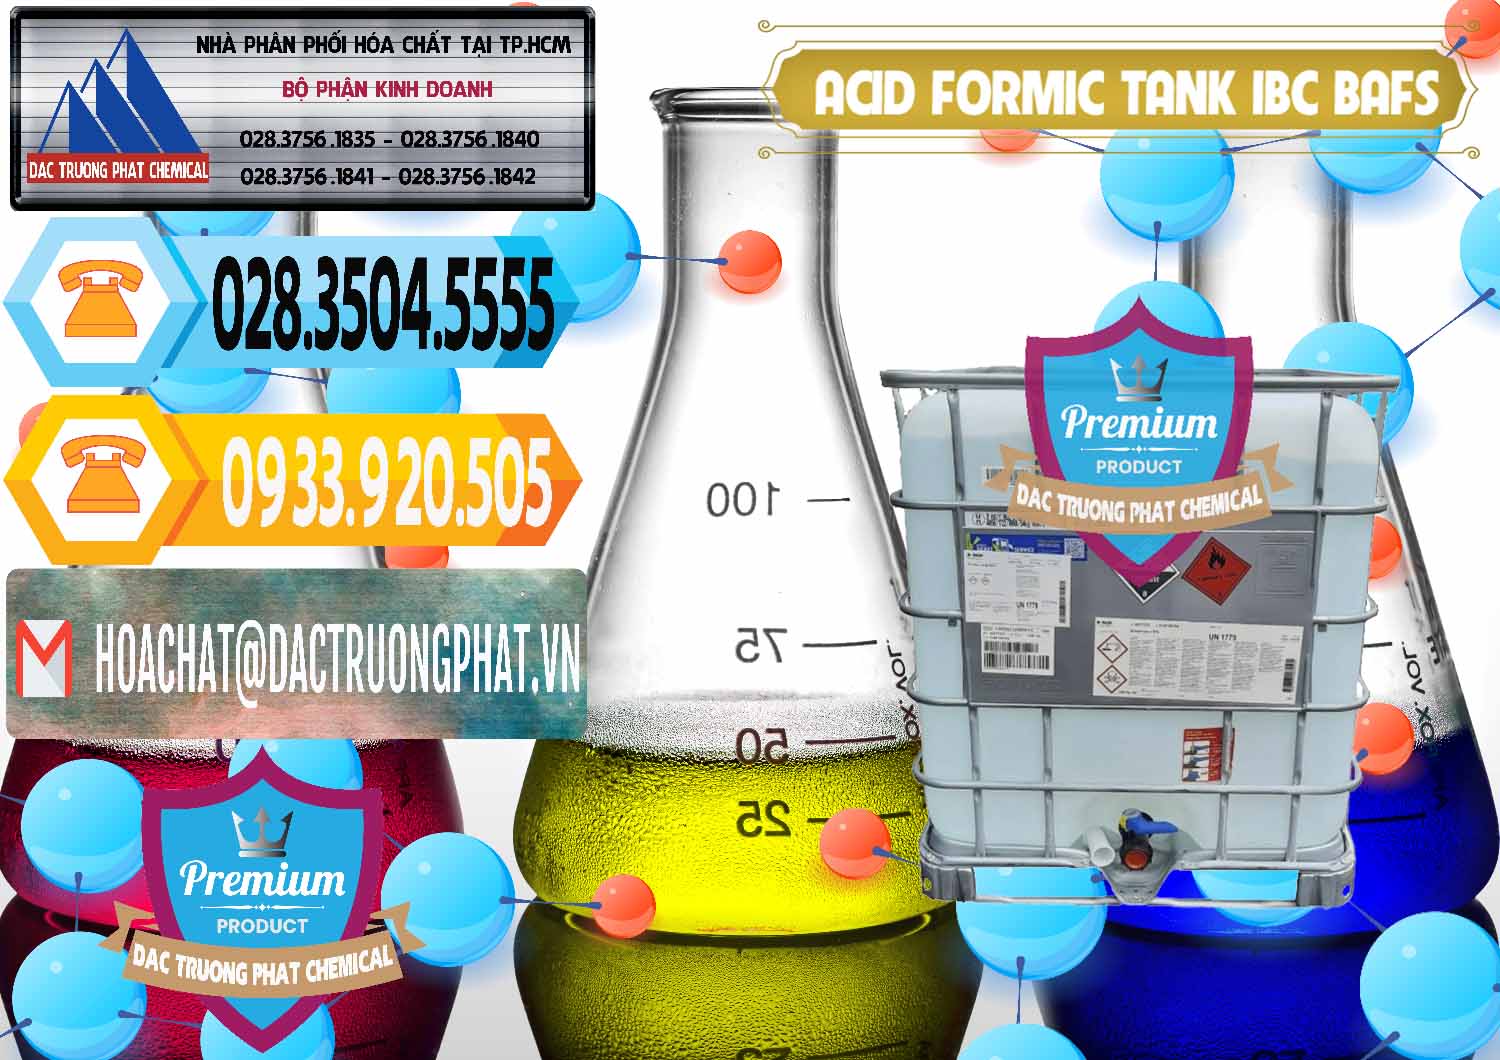 Công ty phân phối ( bán ) Acid Formic - Axit Formic Tank - Bồn IBC BASF Đức - 0366 - Phân phối hóa chất tại TP.HCM - hoachattayrua.net